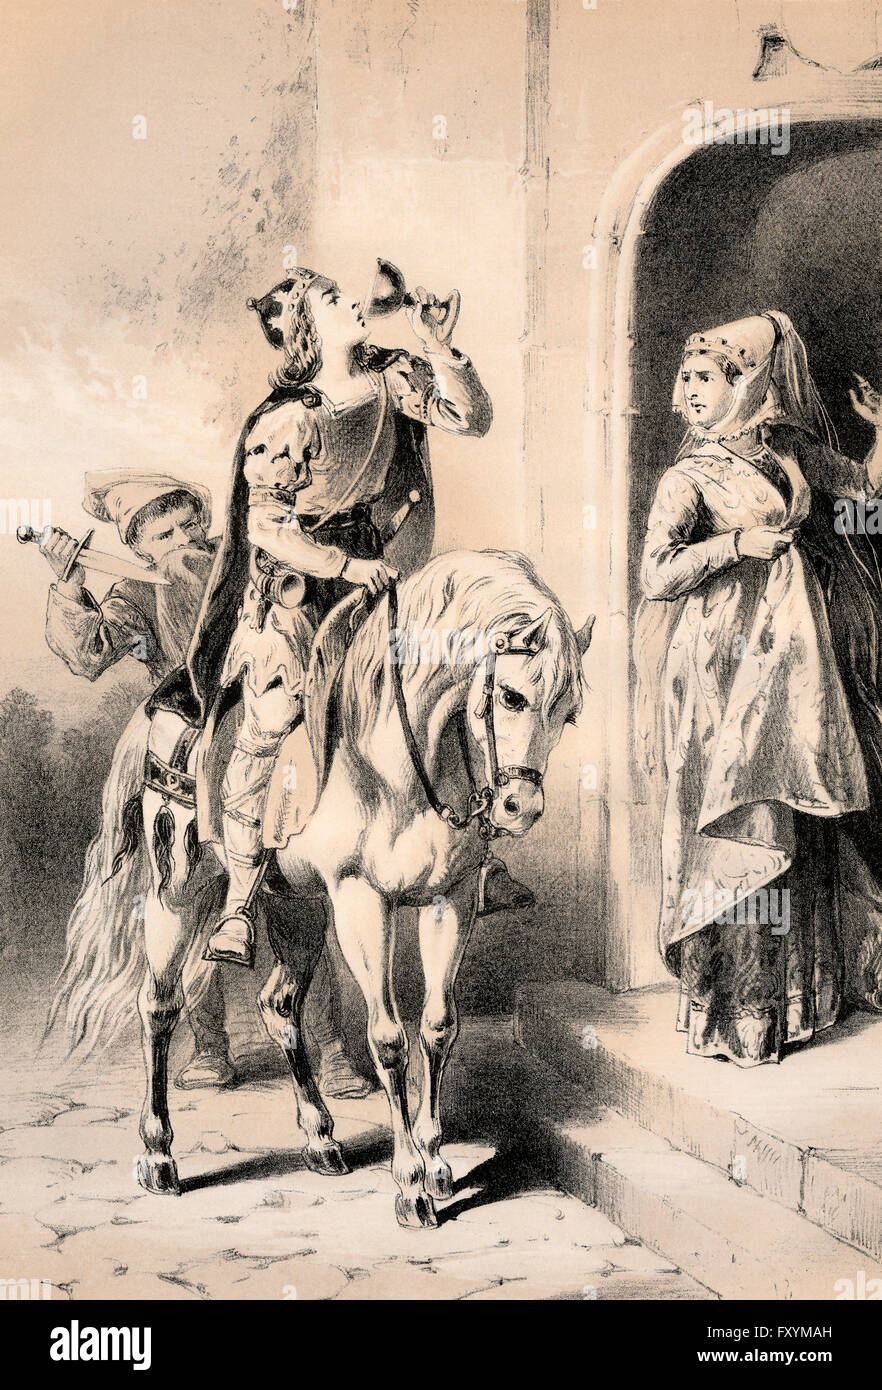 Illustrazione dell'assassinio di Edoardo il martire o Eadweard; c. 962 - 978, Re dell'inglese Foto Stock